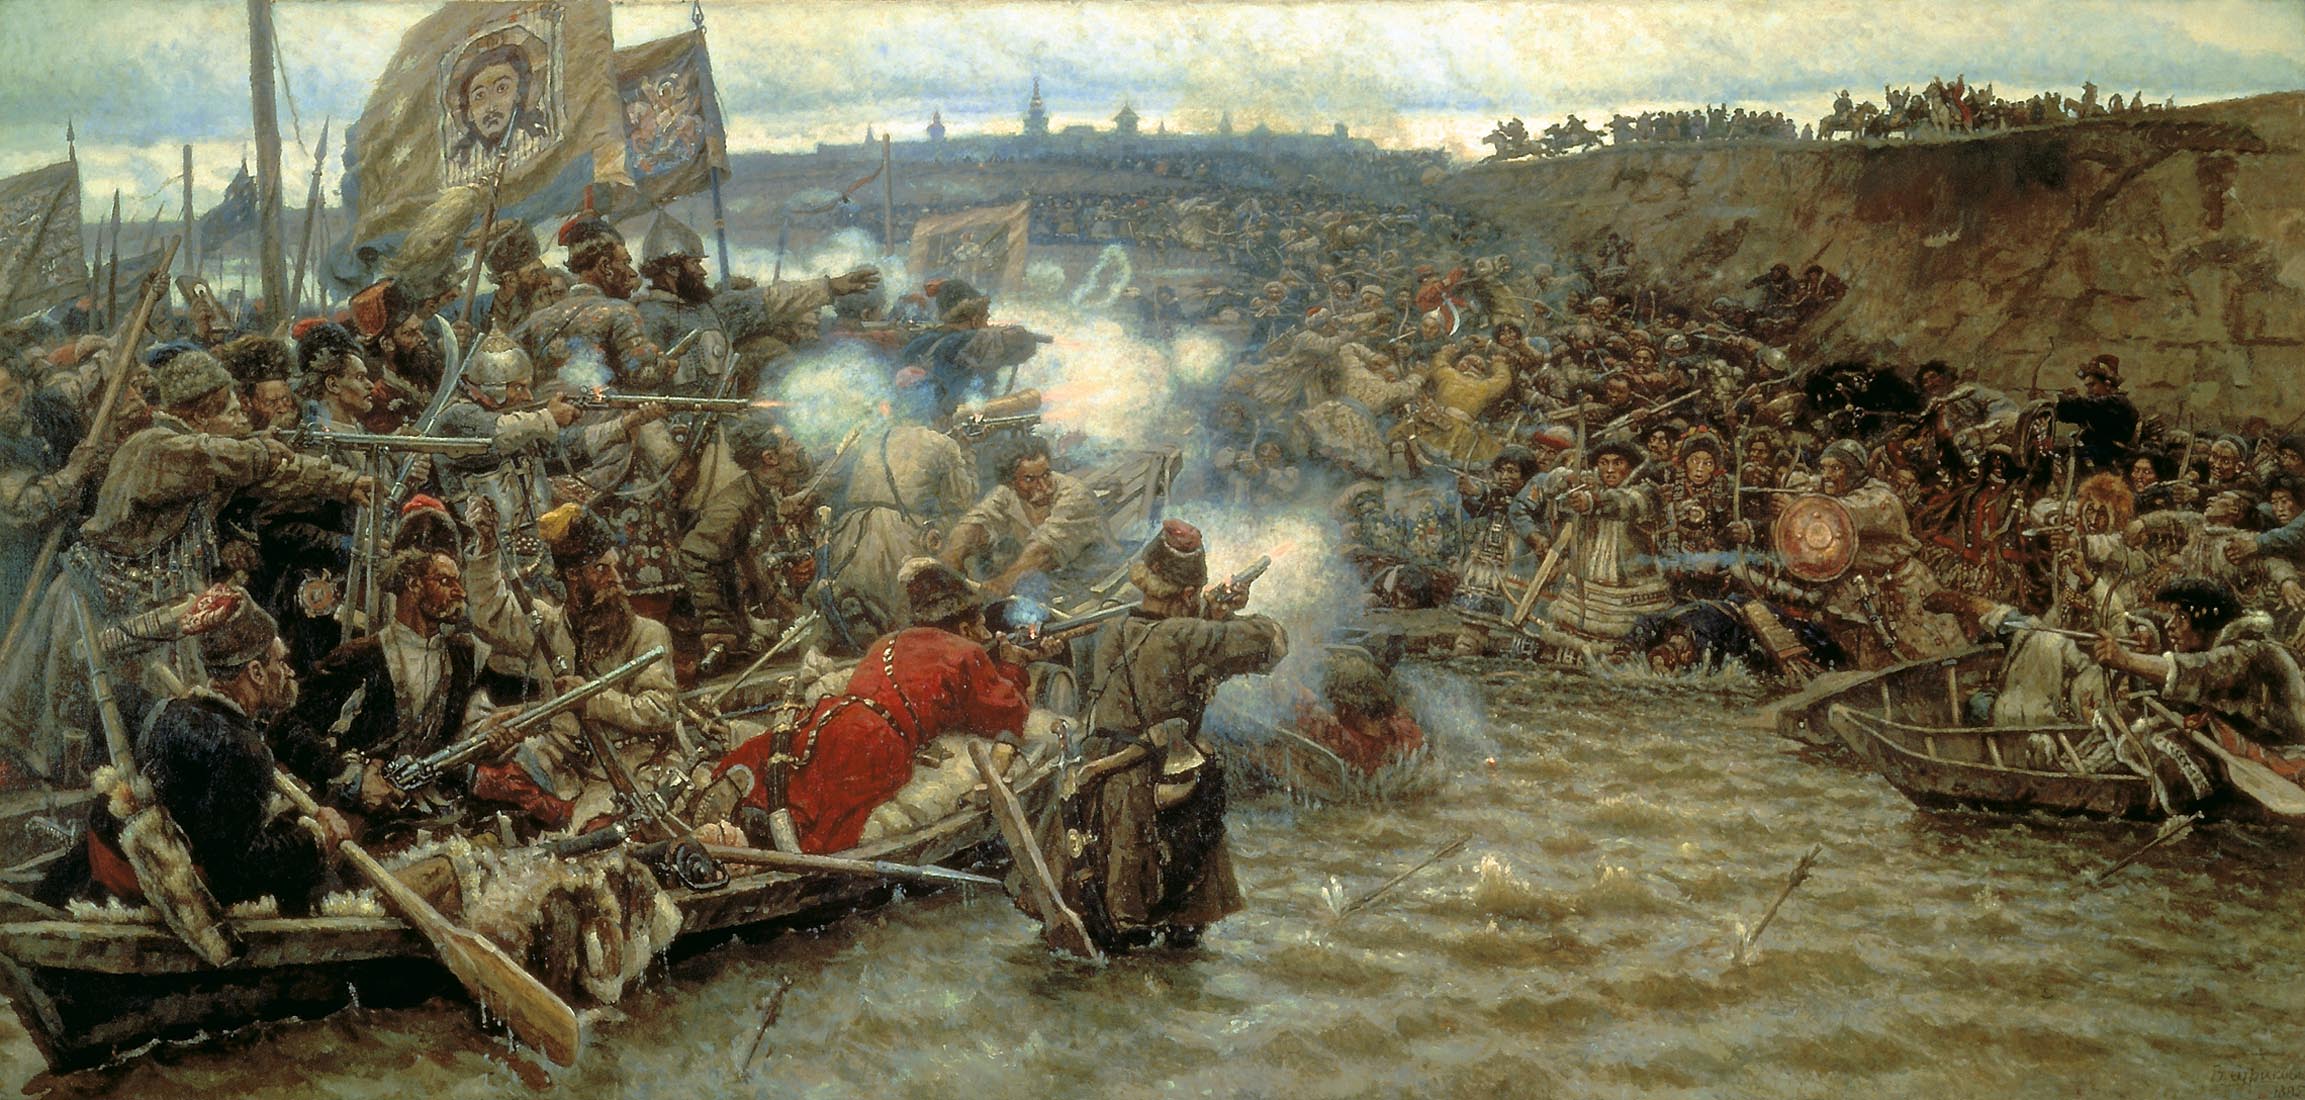 Василий Иванович Суриков. "Покорение Сибири Ермаком". 1895.